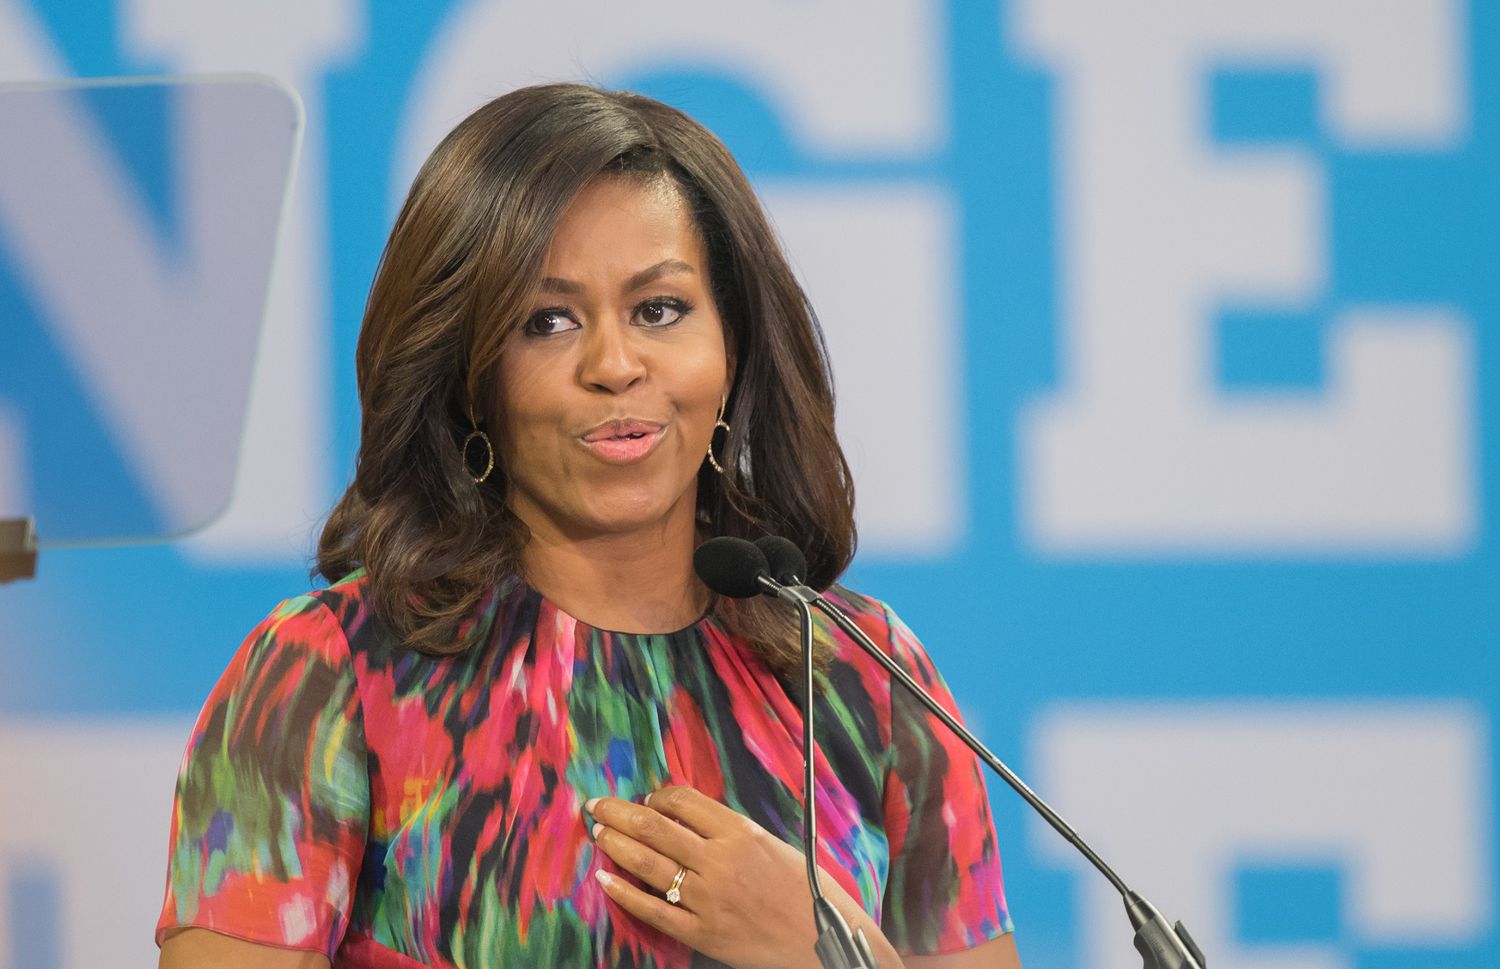 Michelle Obama Speaking